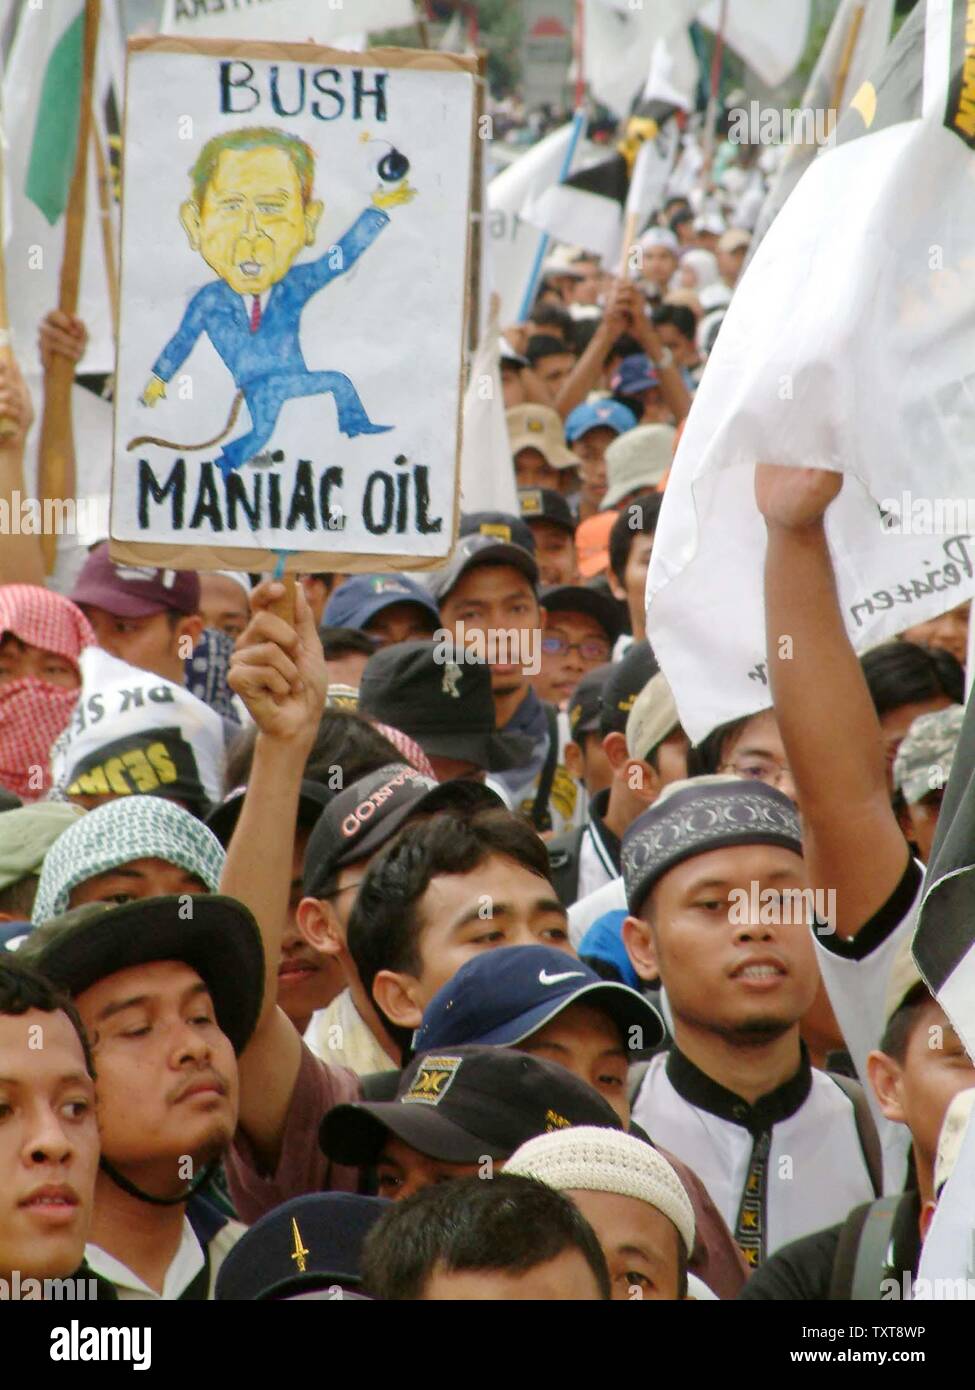 Muslimische Demonstranten Parolen schreien protestieren auf einer Kundgebung in Jakarta, Indonesien, am Sonntag, den 28. November 2004. Zehntausende der Muslimischen-basierte Wohlhabenden Gerechtigkeit Partei hielt eine der größten anti-irakischen Krieg Proteste im bevölkerungsreichsten muslimischen Land der Welt gegen die jüngste US-Offensive in Falludscha. (UPI Foto/Saprizal) Stockfoto